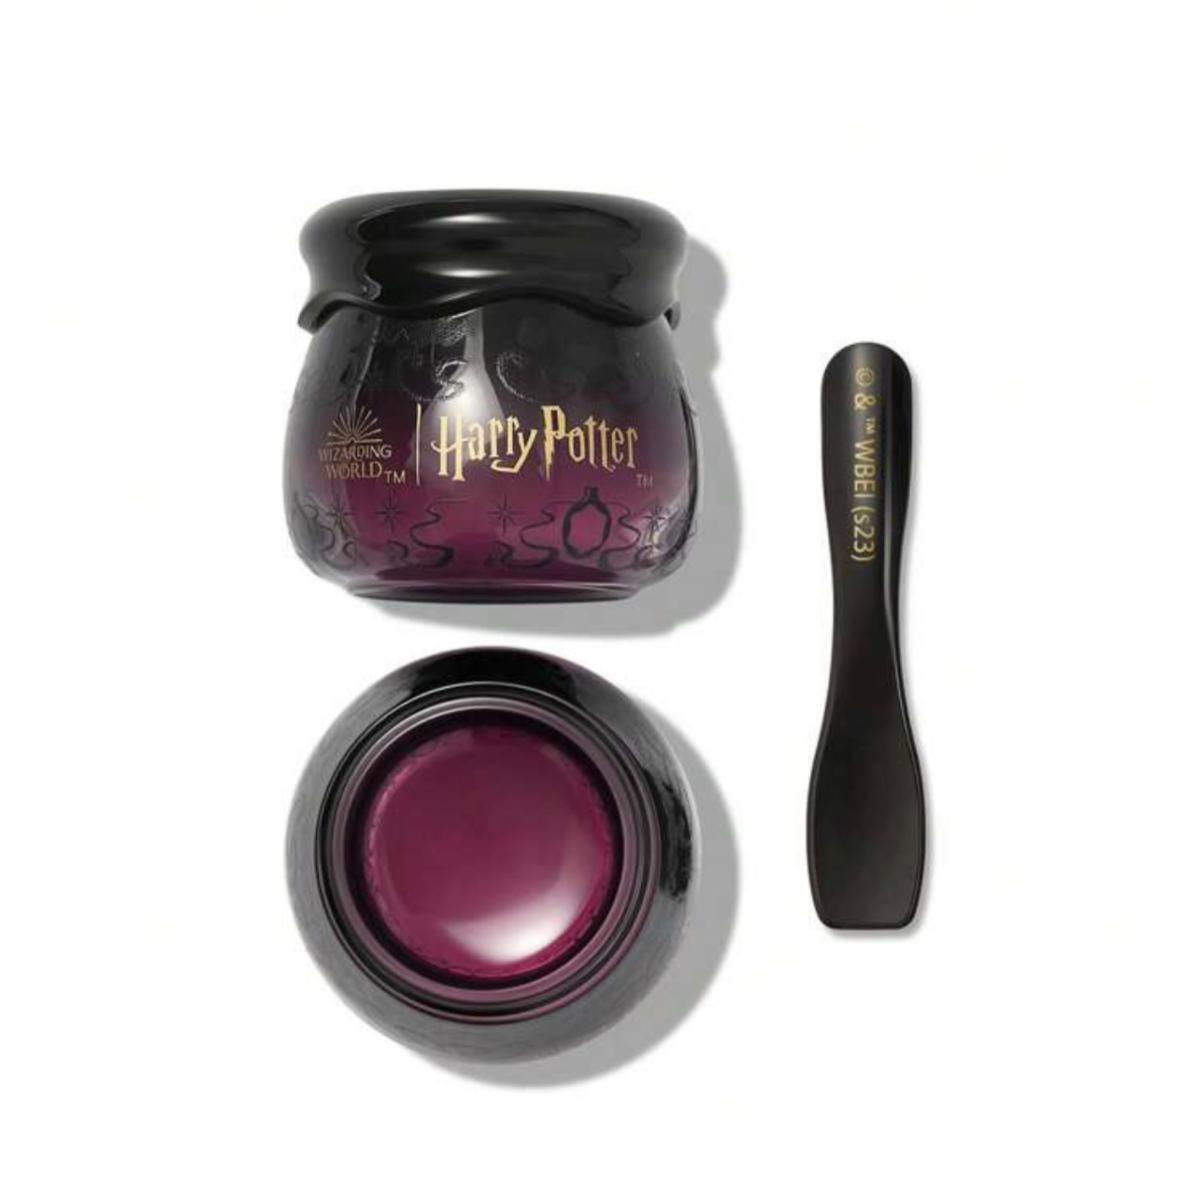 ماسک لب هری پاتر - Harry potter lip mask